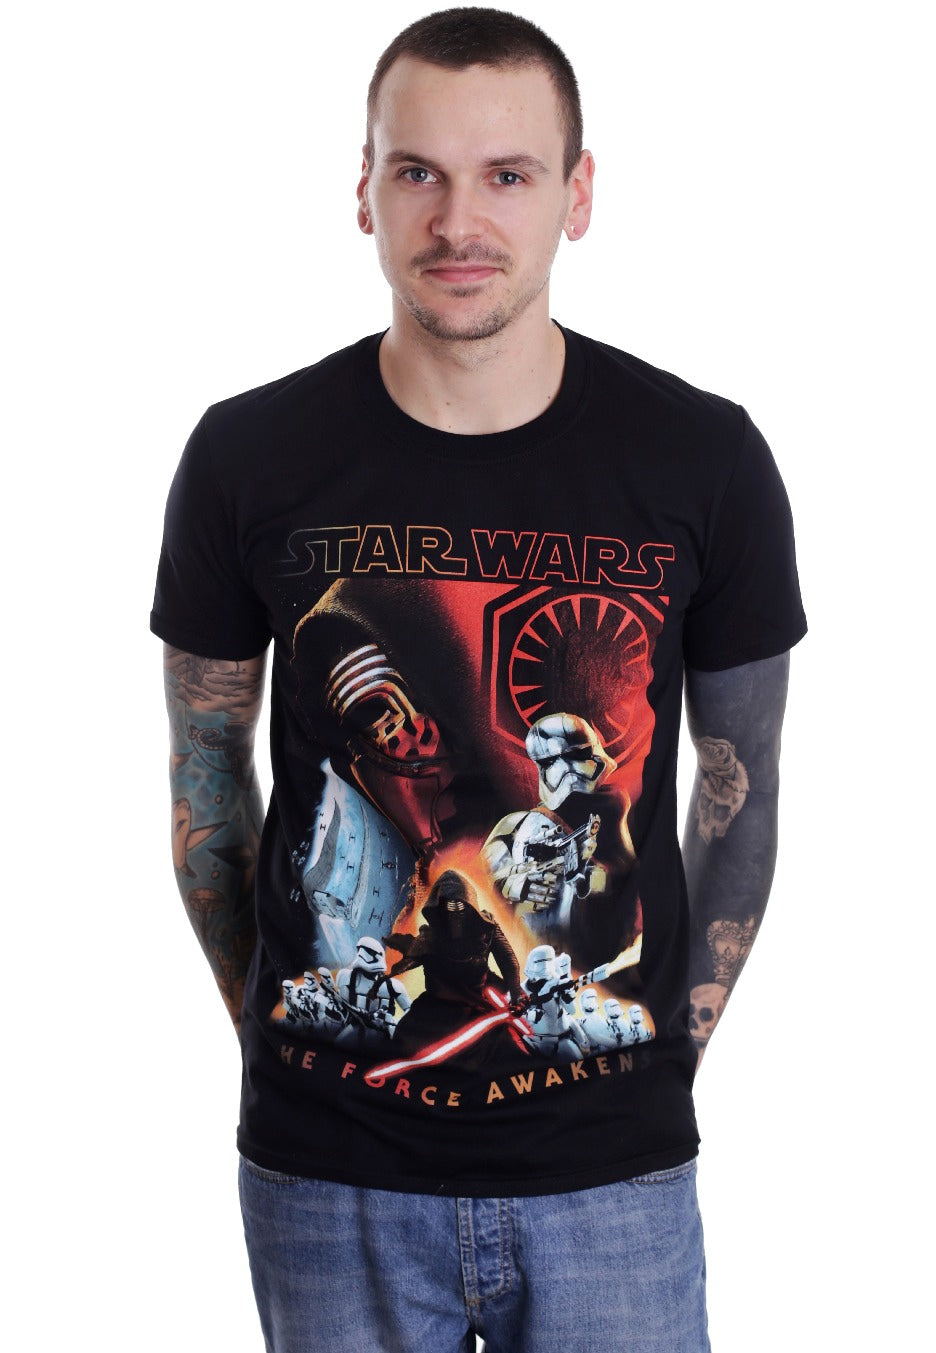 Star Wars - TFA Collage - T-Shirt